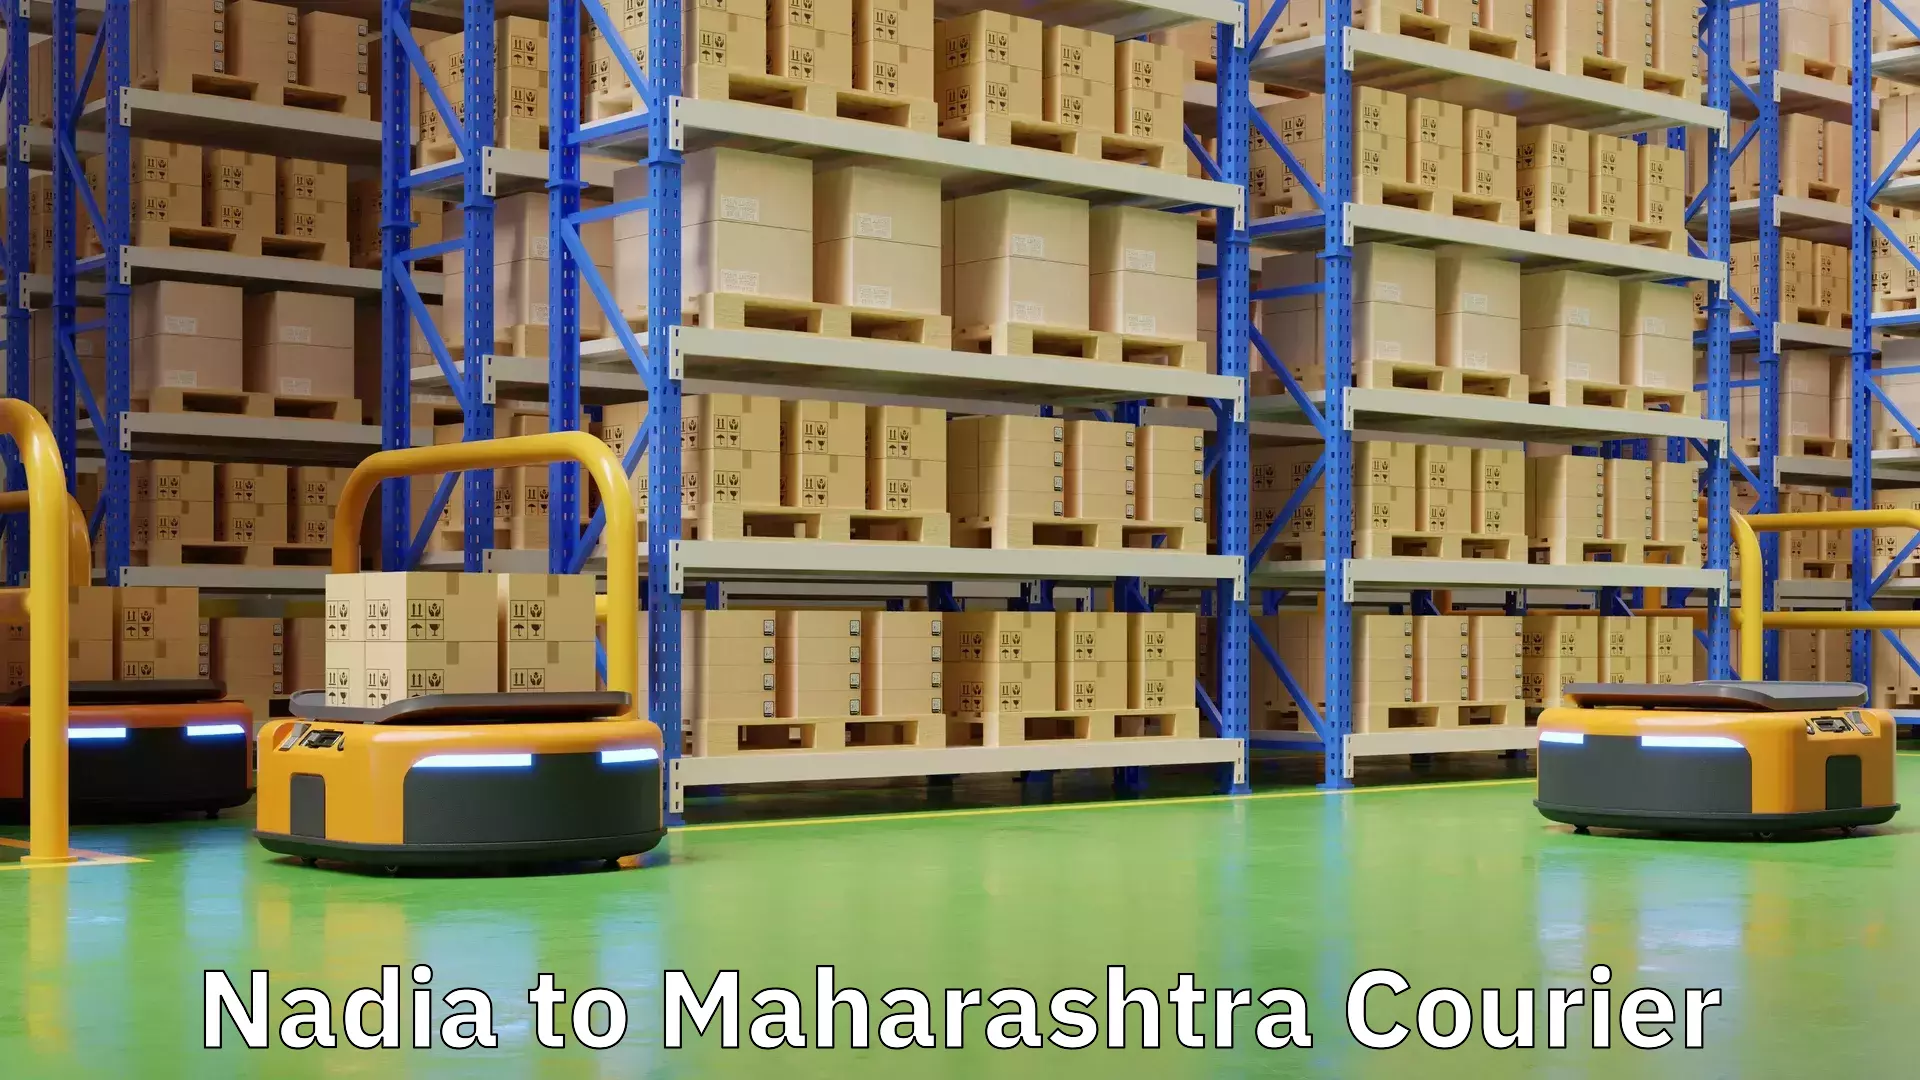 Dynamic courier operations Nadia to Maharashtra